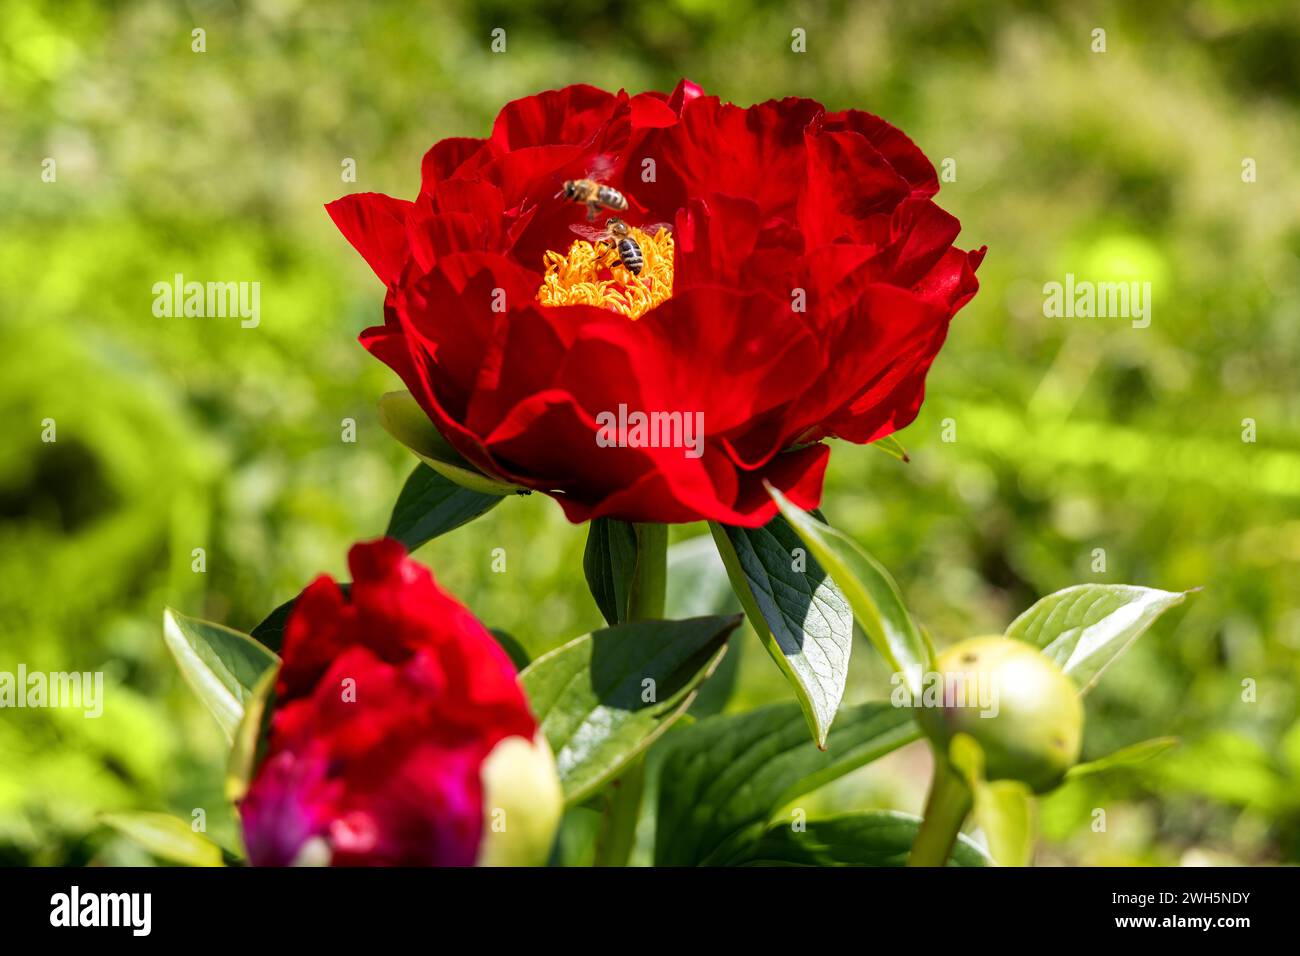 Paeonia Mackinac grandi fiori in giardino. Fiori di peonia rosso brillante, primo piano Foto Stock